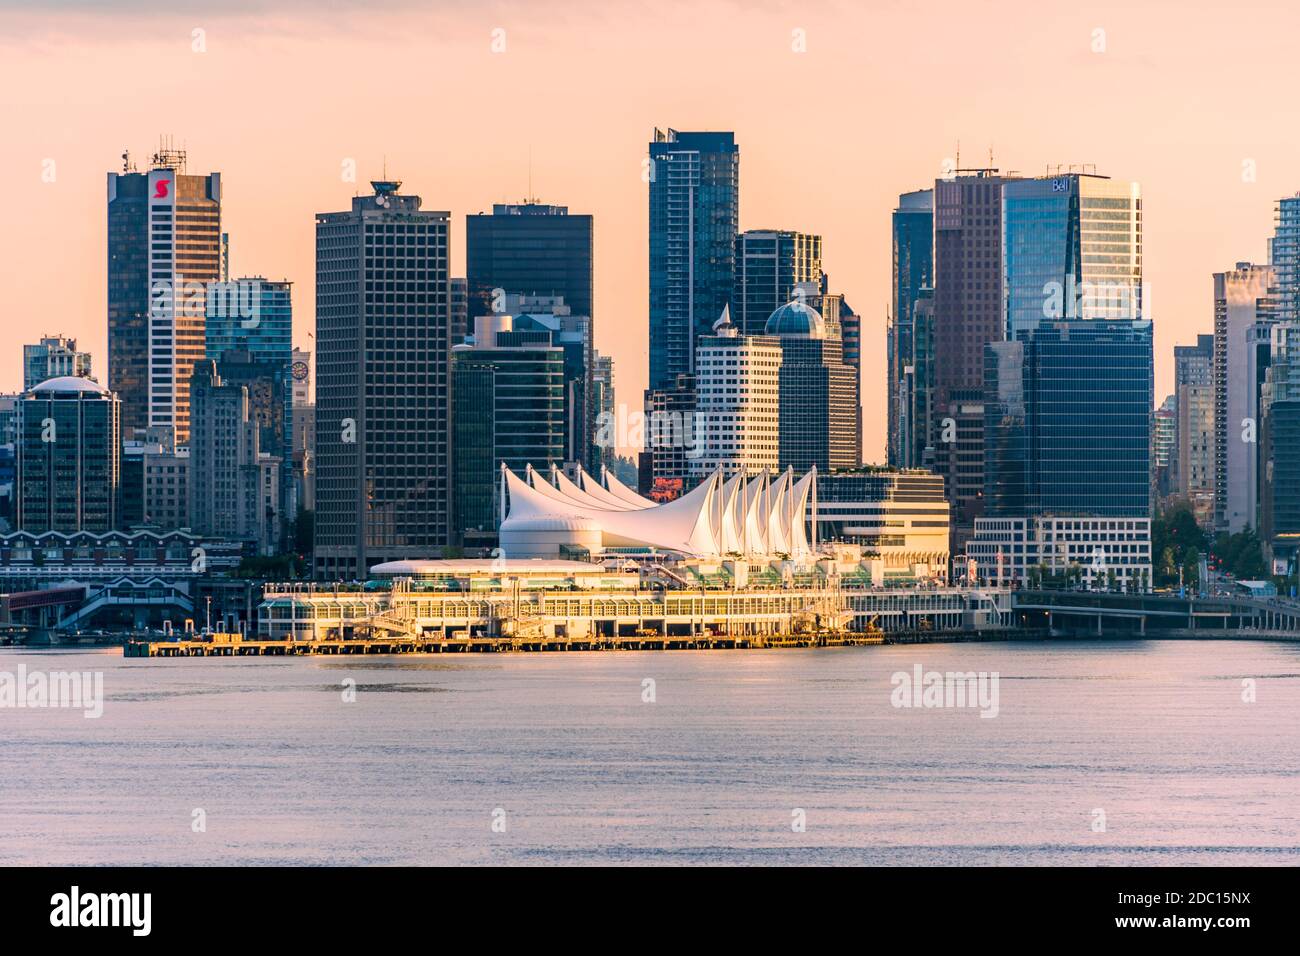 Le terminal de croisière de Vancouver à Canada place, Vancouver, C.-B., Canada, semble de North Vancouver. Banque D'Images